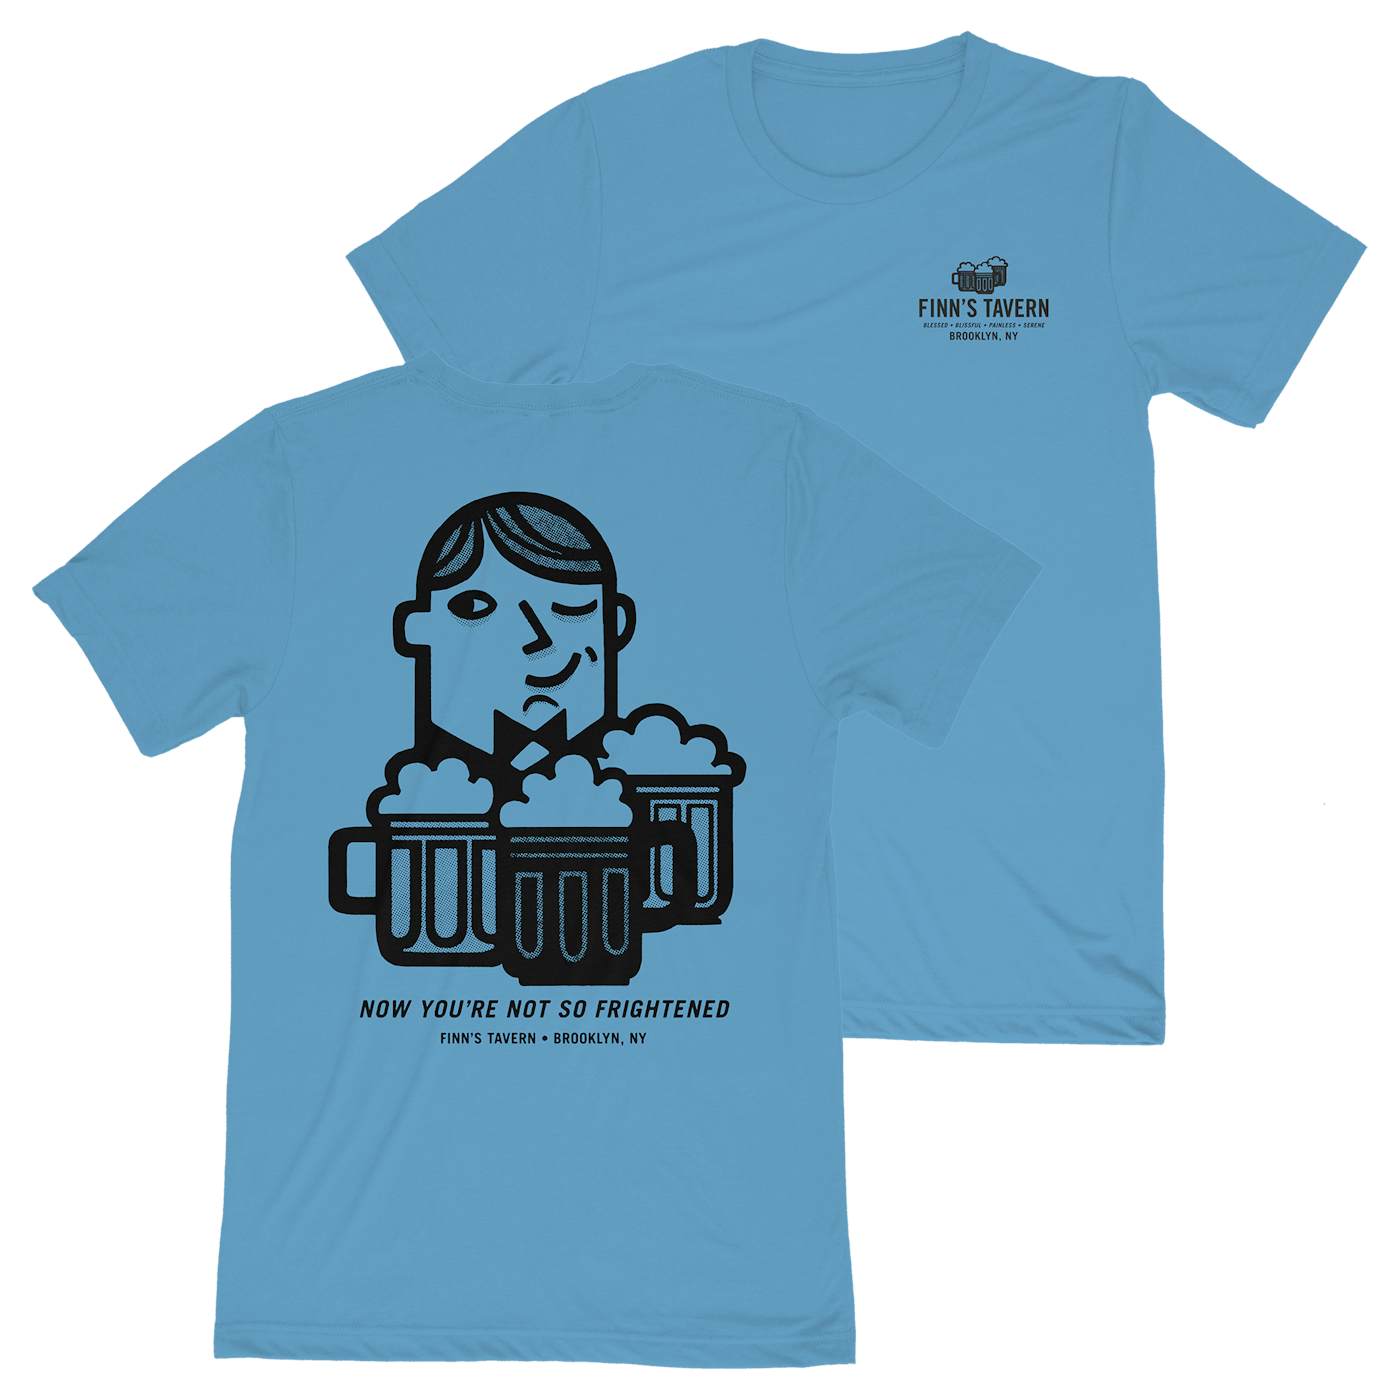 Craig Finn - Finn's Tavern Shirt (Ocean Blue)